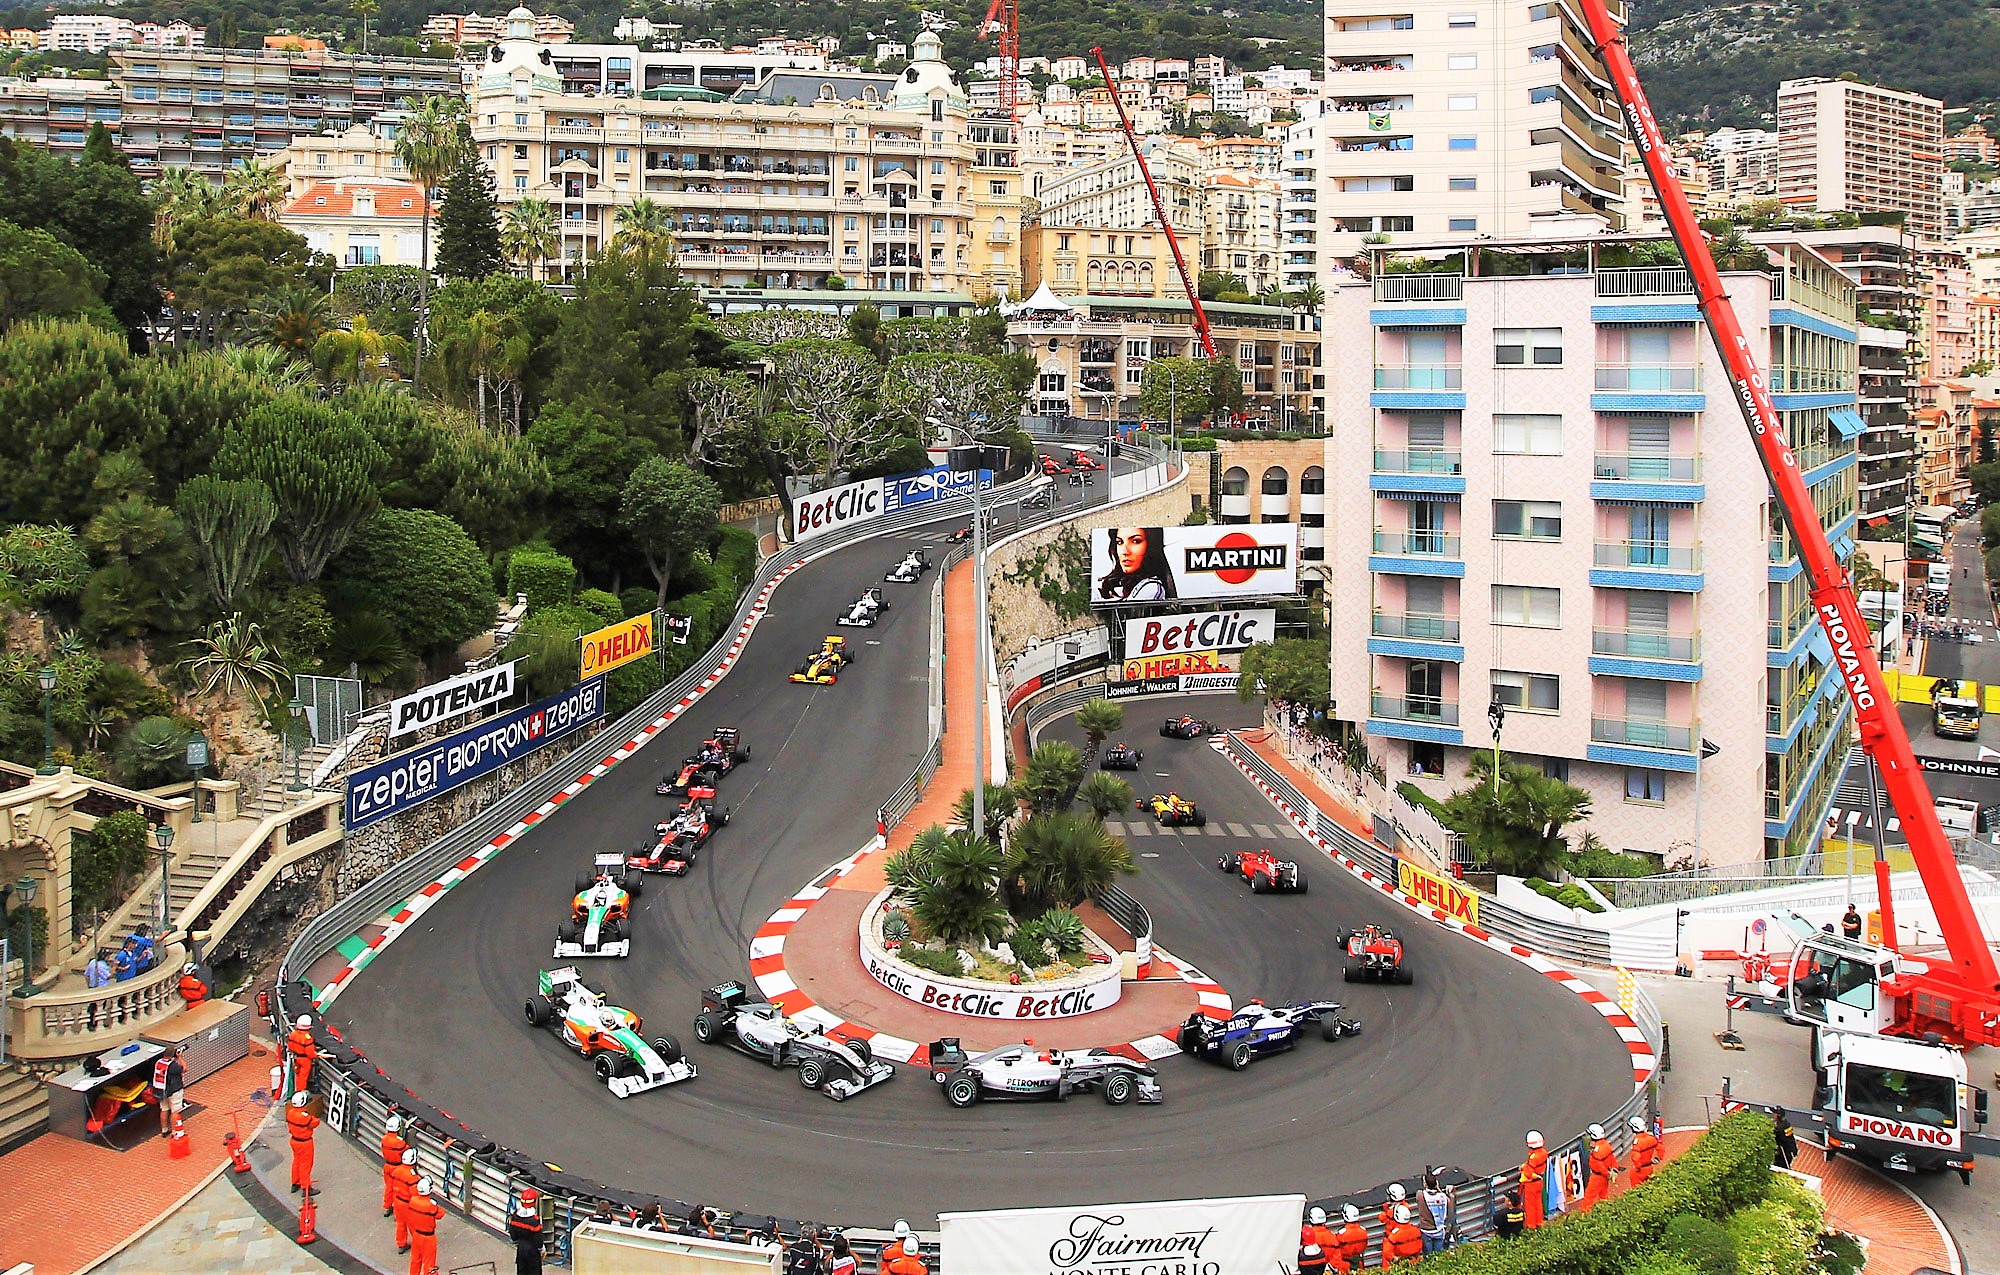 GP Monaco, i 3 chilometri del circuito unico al mondo